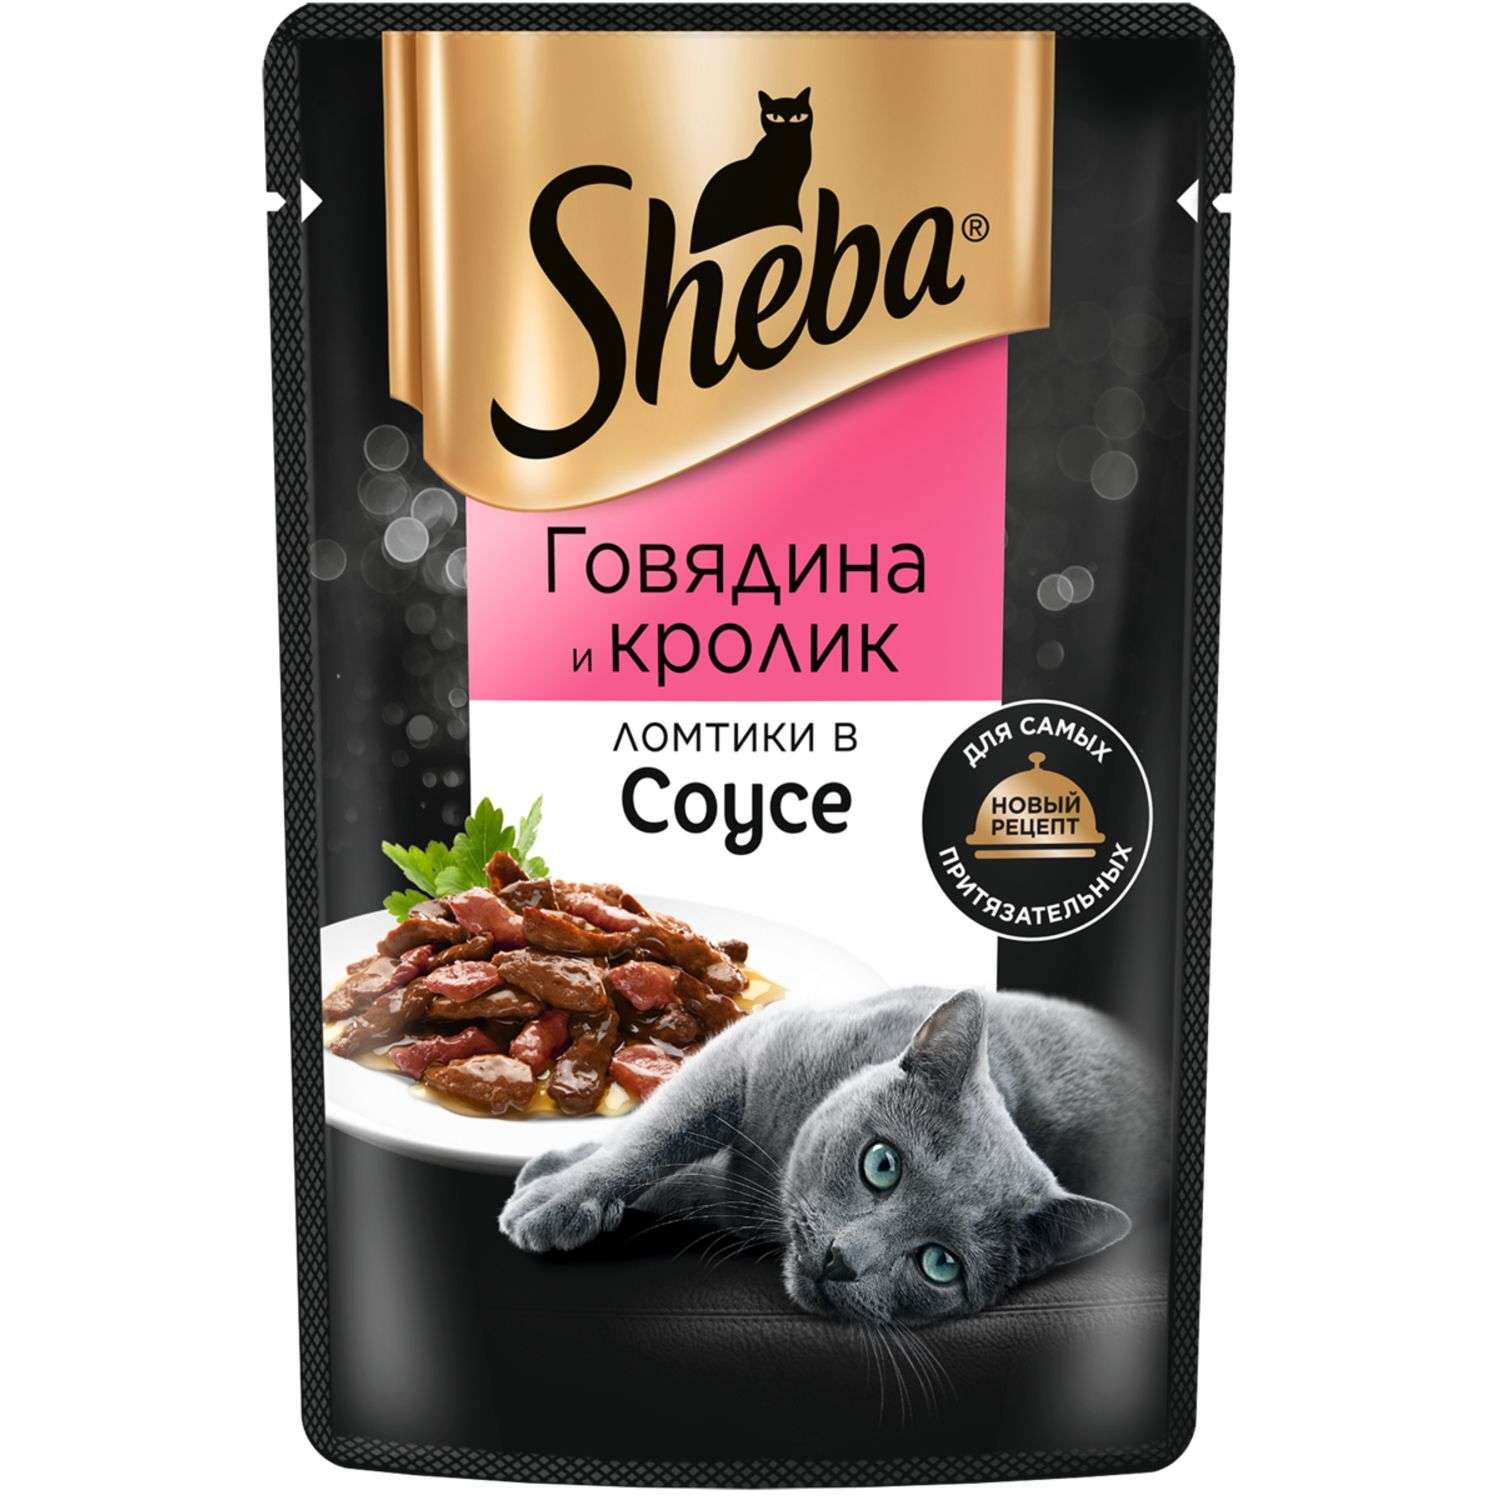 Корм для кошек Sheba 75г ломтики в соусе с говядиной и кроликом - фото 2